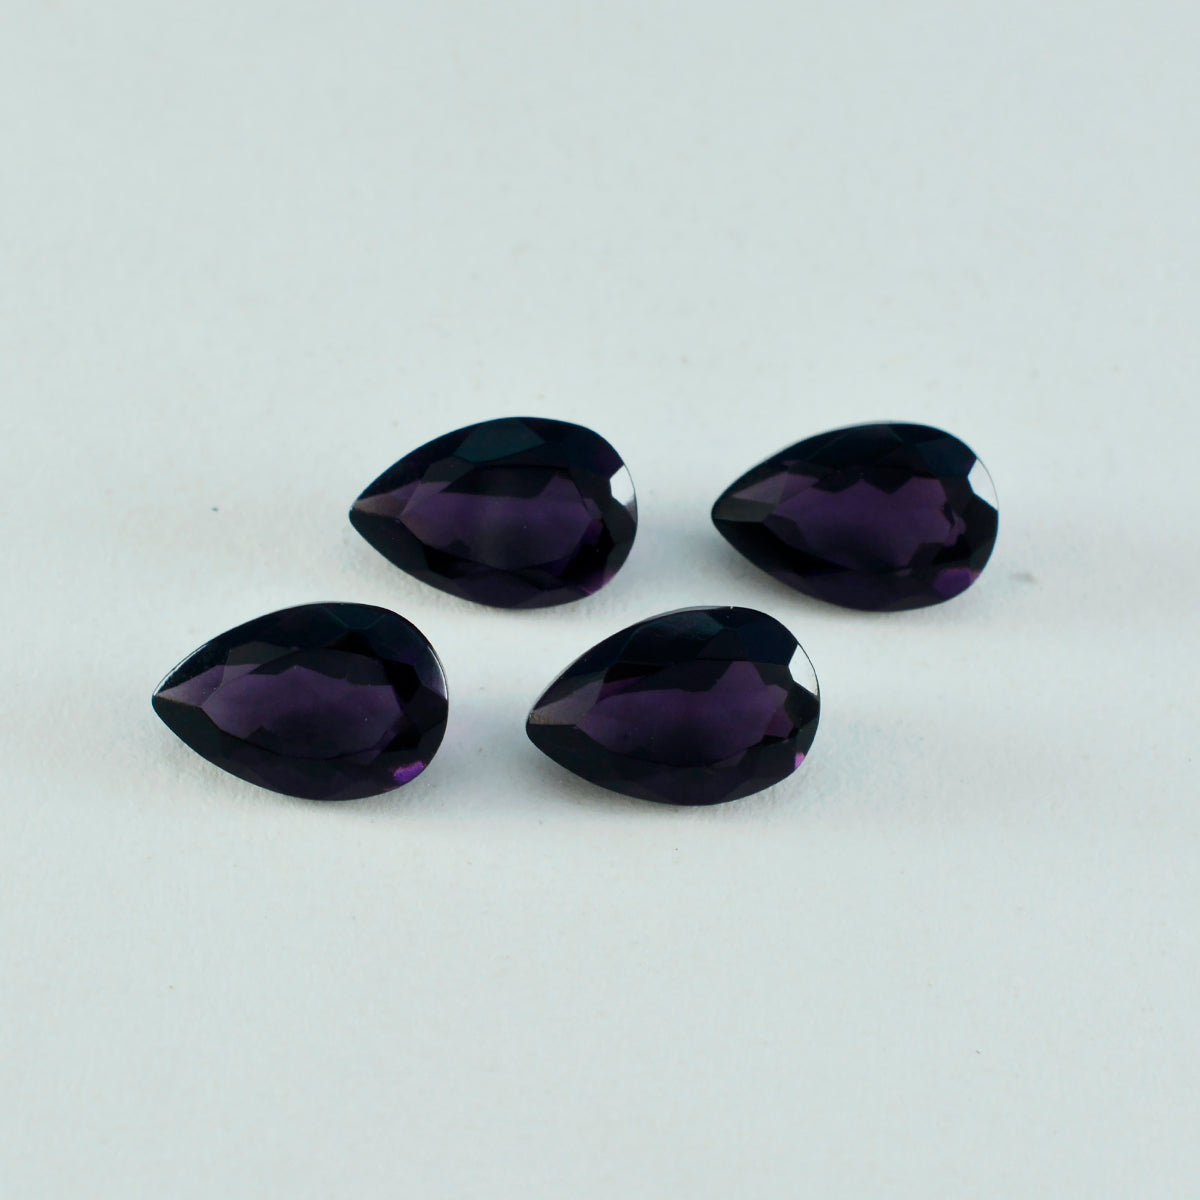 Riyogems 1 pieza de amatista púrpura CZ facetada 10x14 mm forma de pera A+1 piedra suelta de calidad